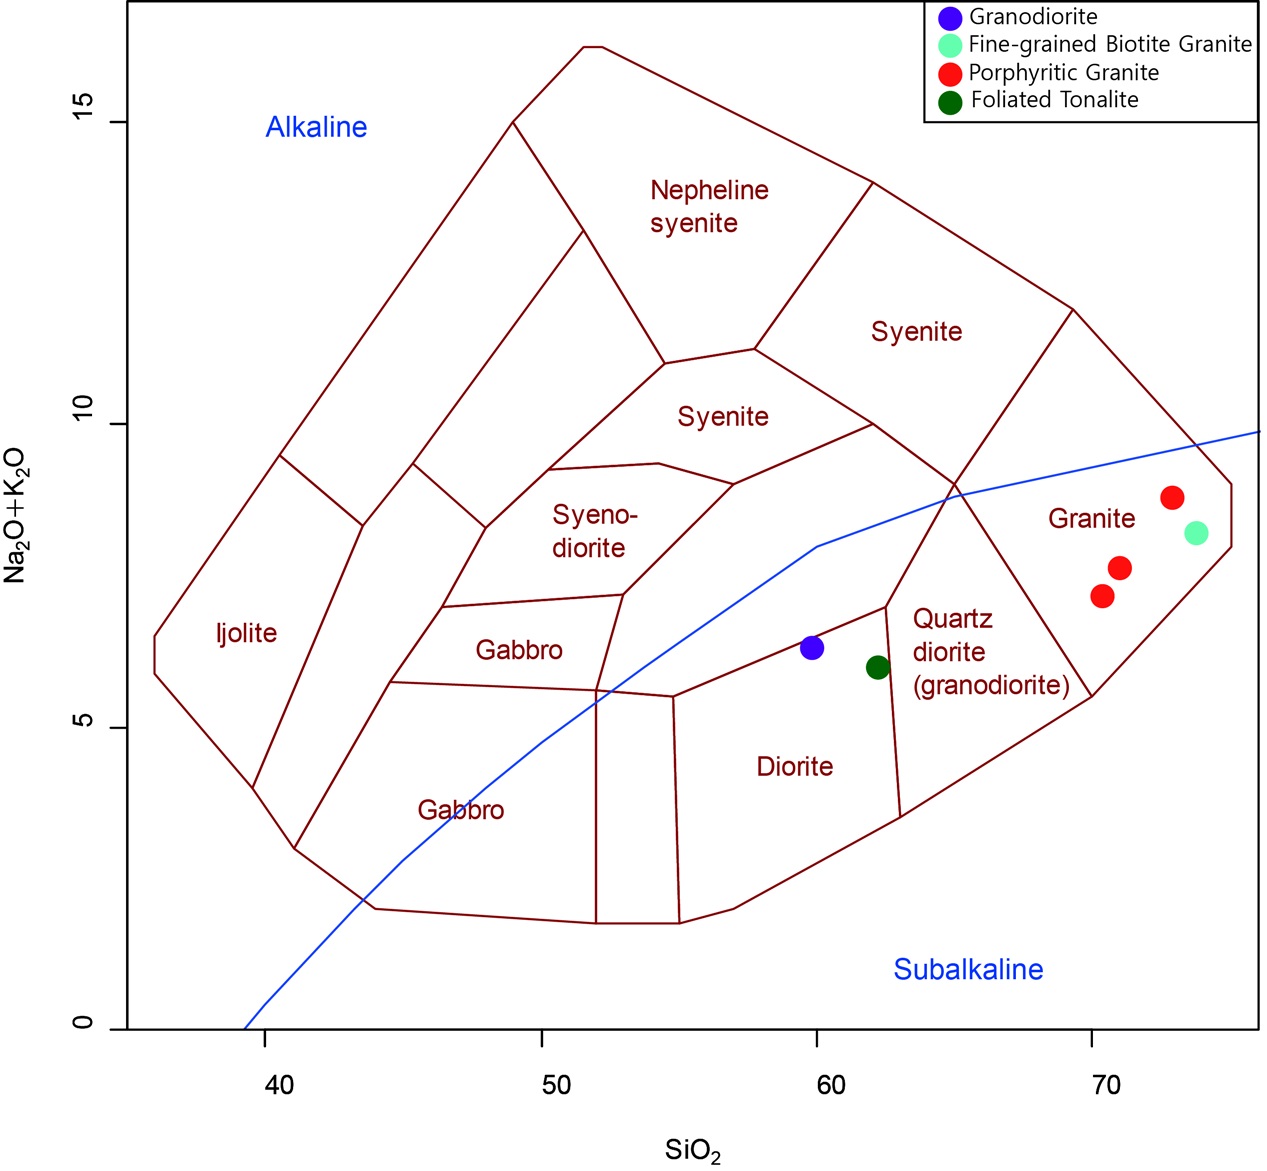 그림 5-1. 화성암의 화학적 분류를 위한 TAS (Total Alkali vs. Silica) 도표